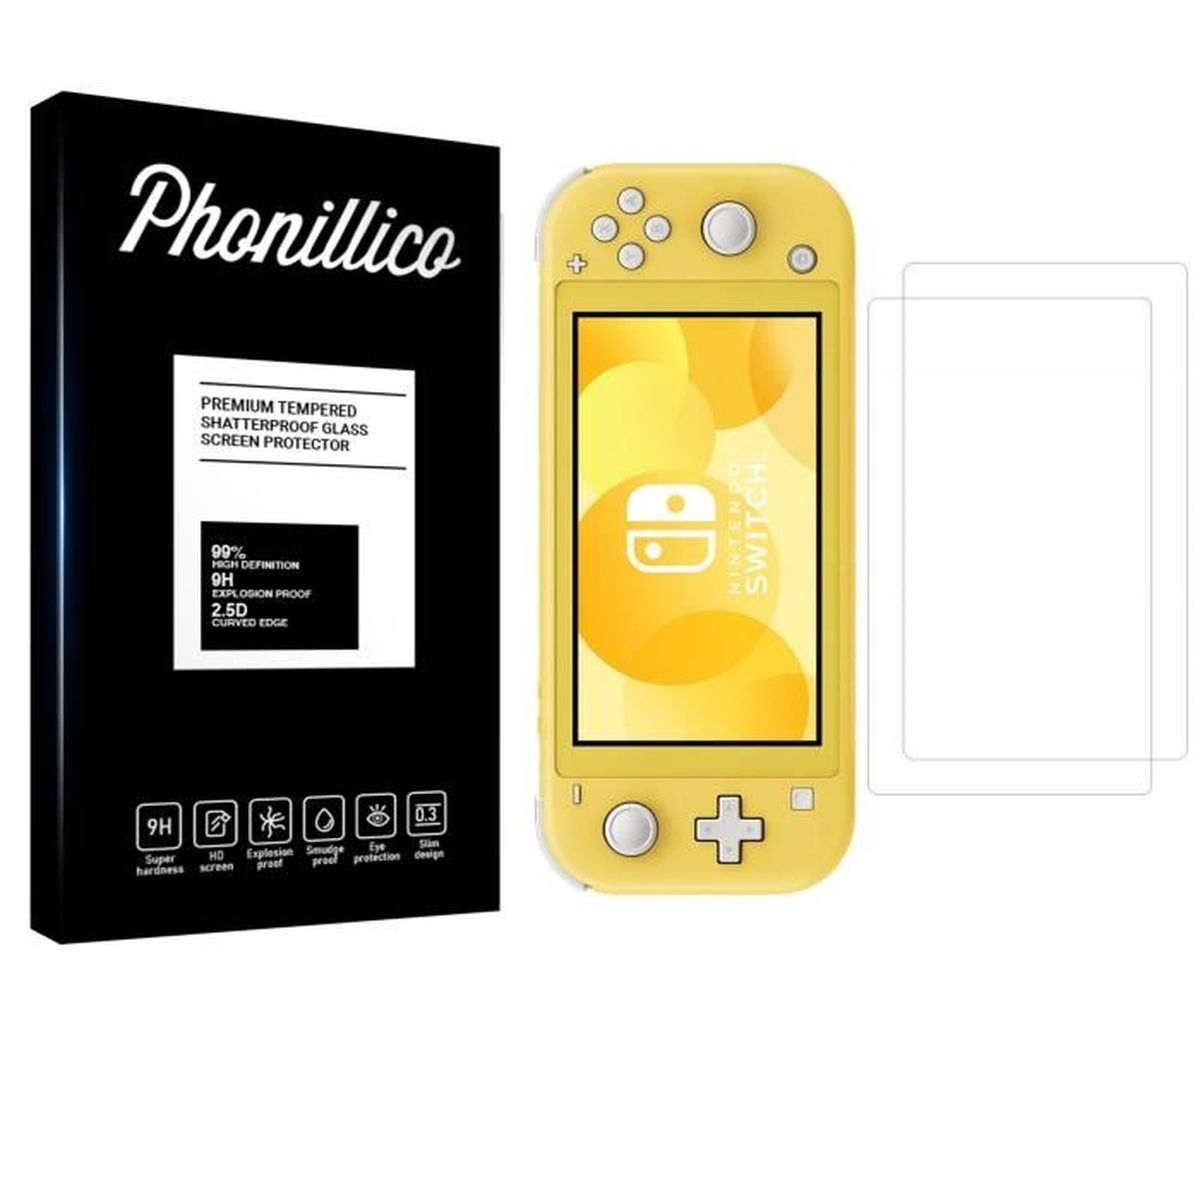 Protecteur d'écran Nintendo Switch Lite - Pack économique de 2 pièces 1 + 1  gratuit! 